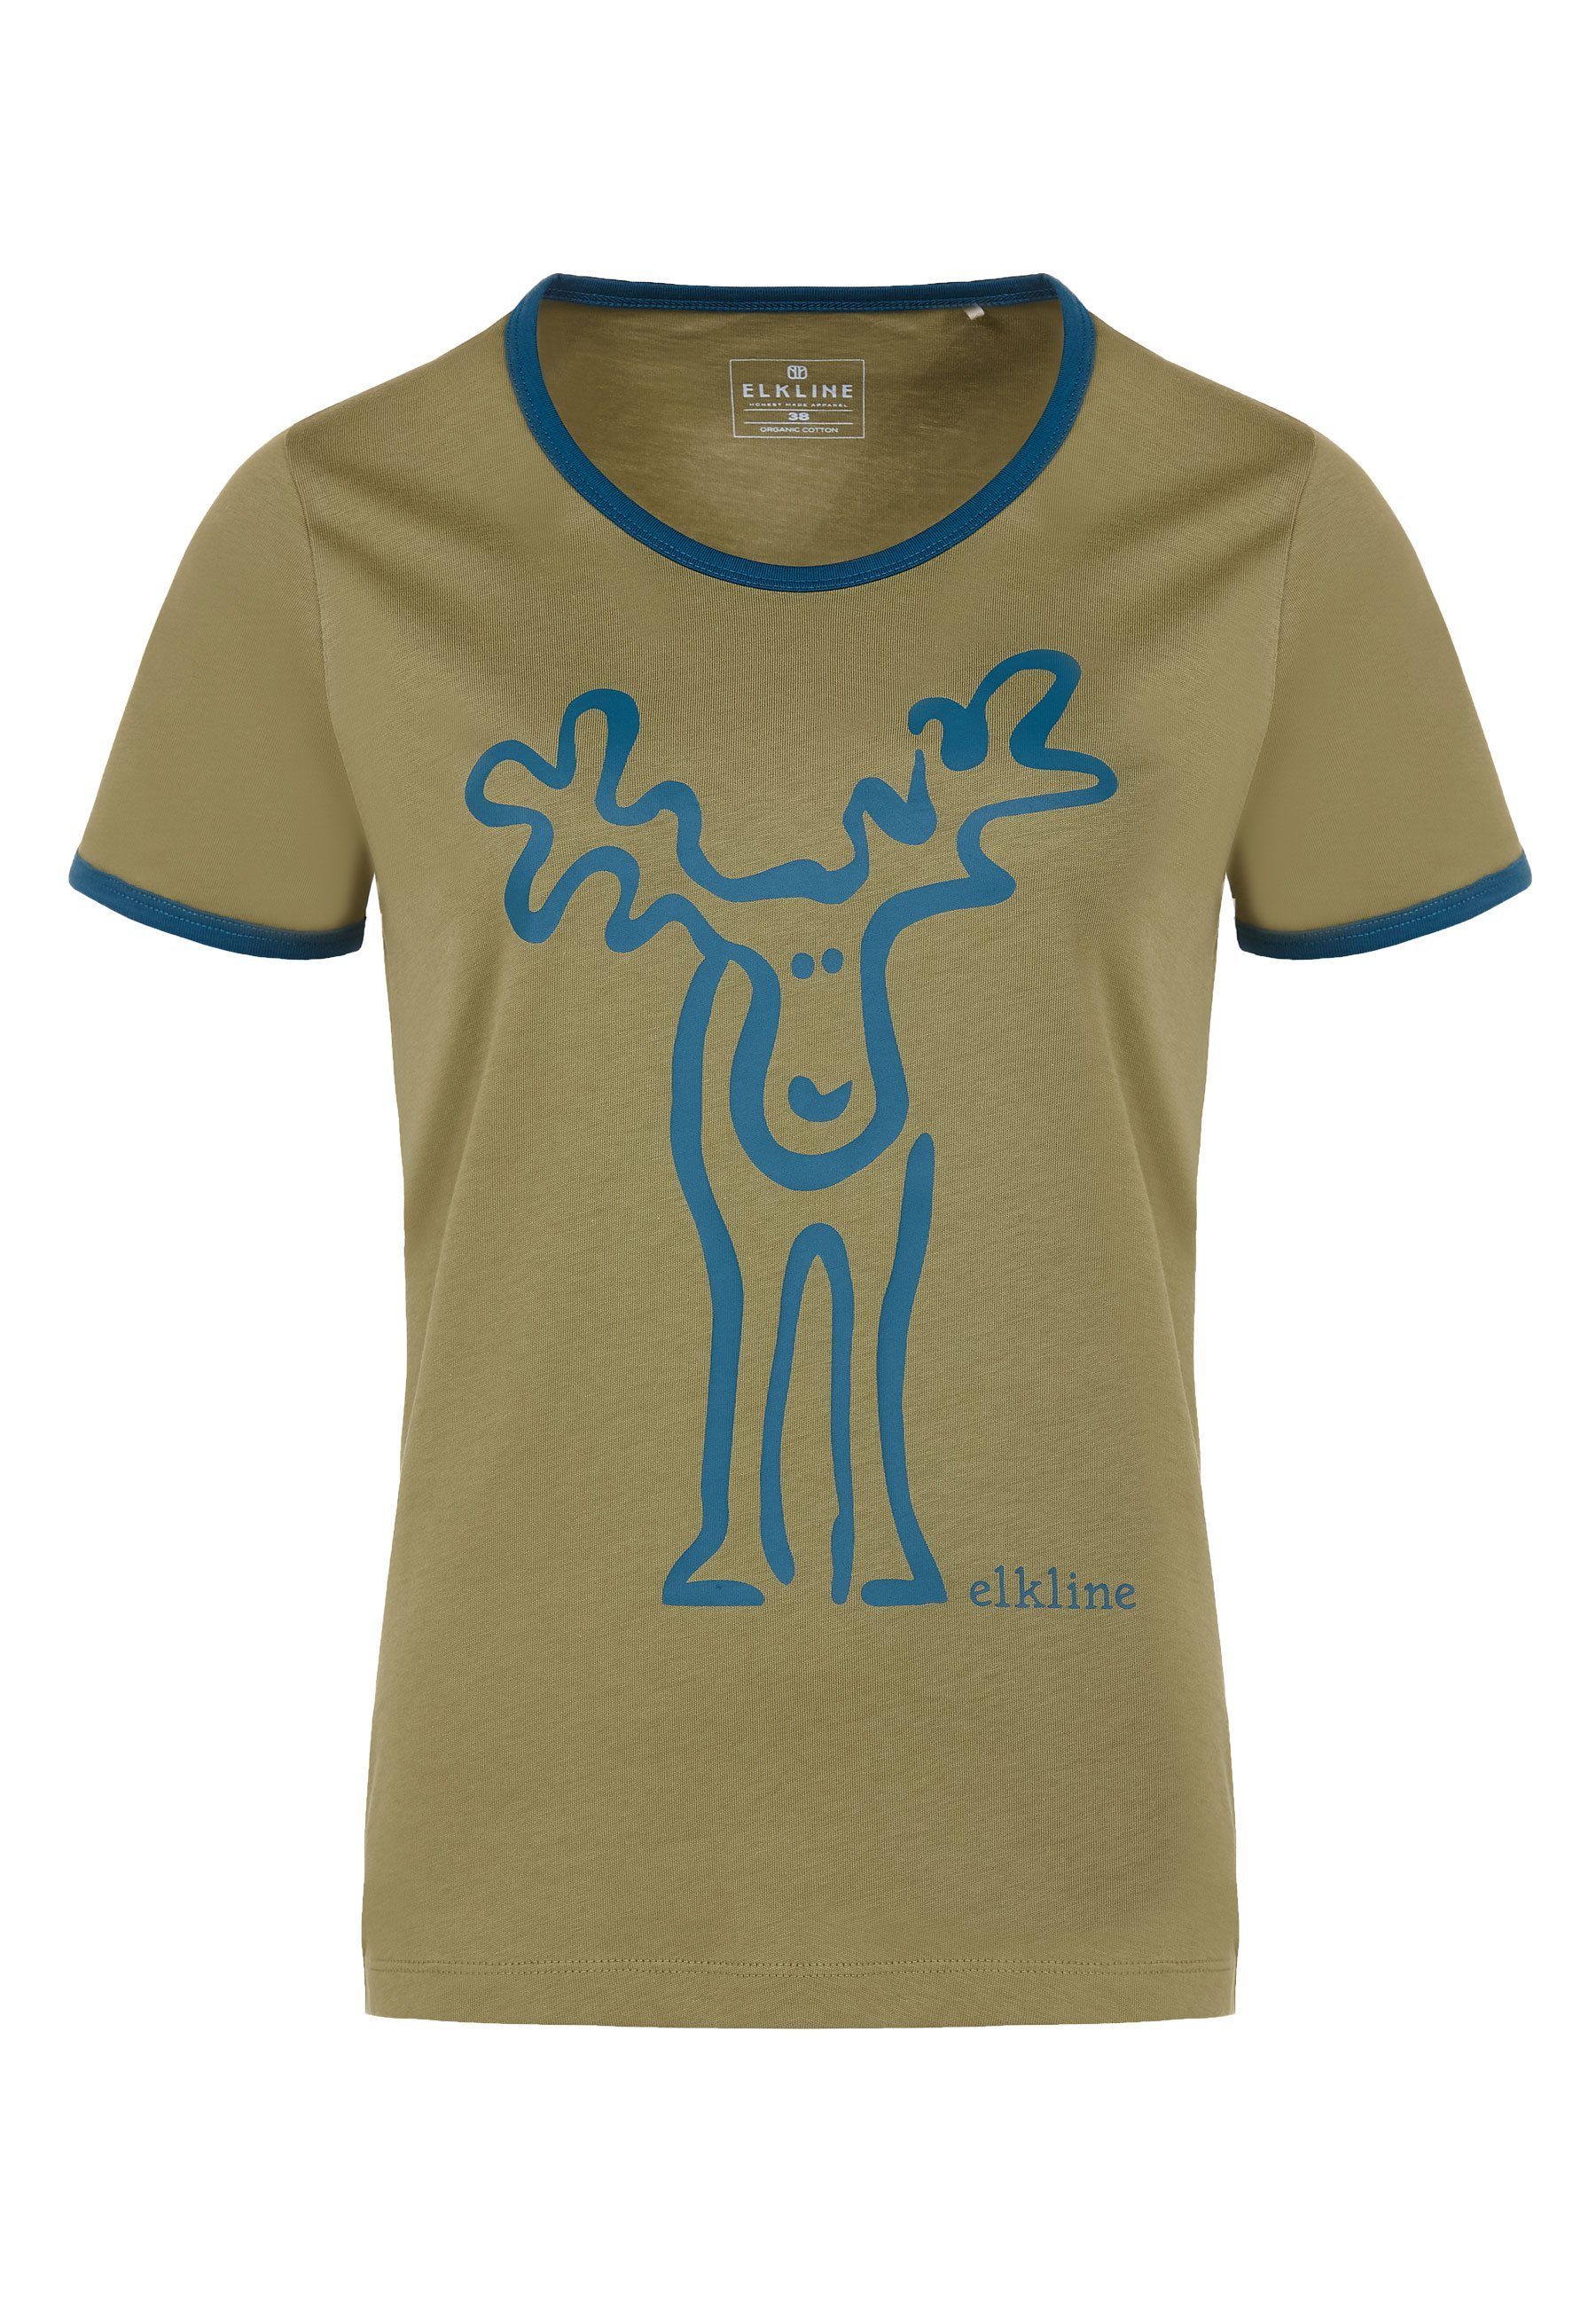 Brust Print Elkline blue Rücken Retro und Rudolfine avocado coral T-Shirt - Elch